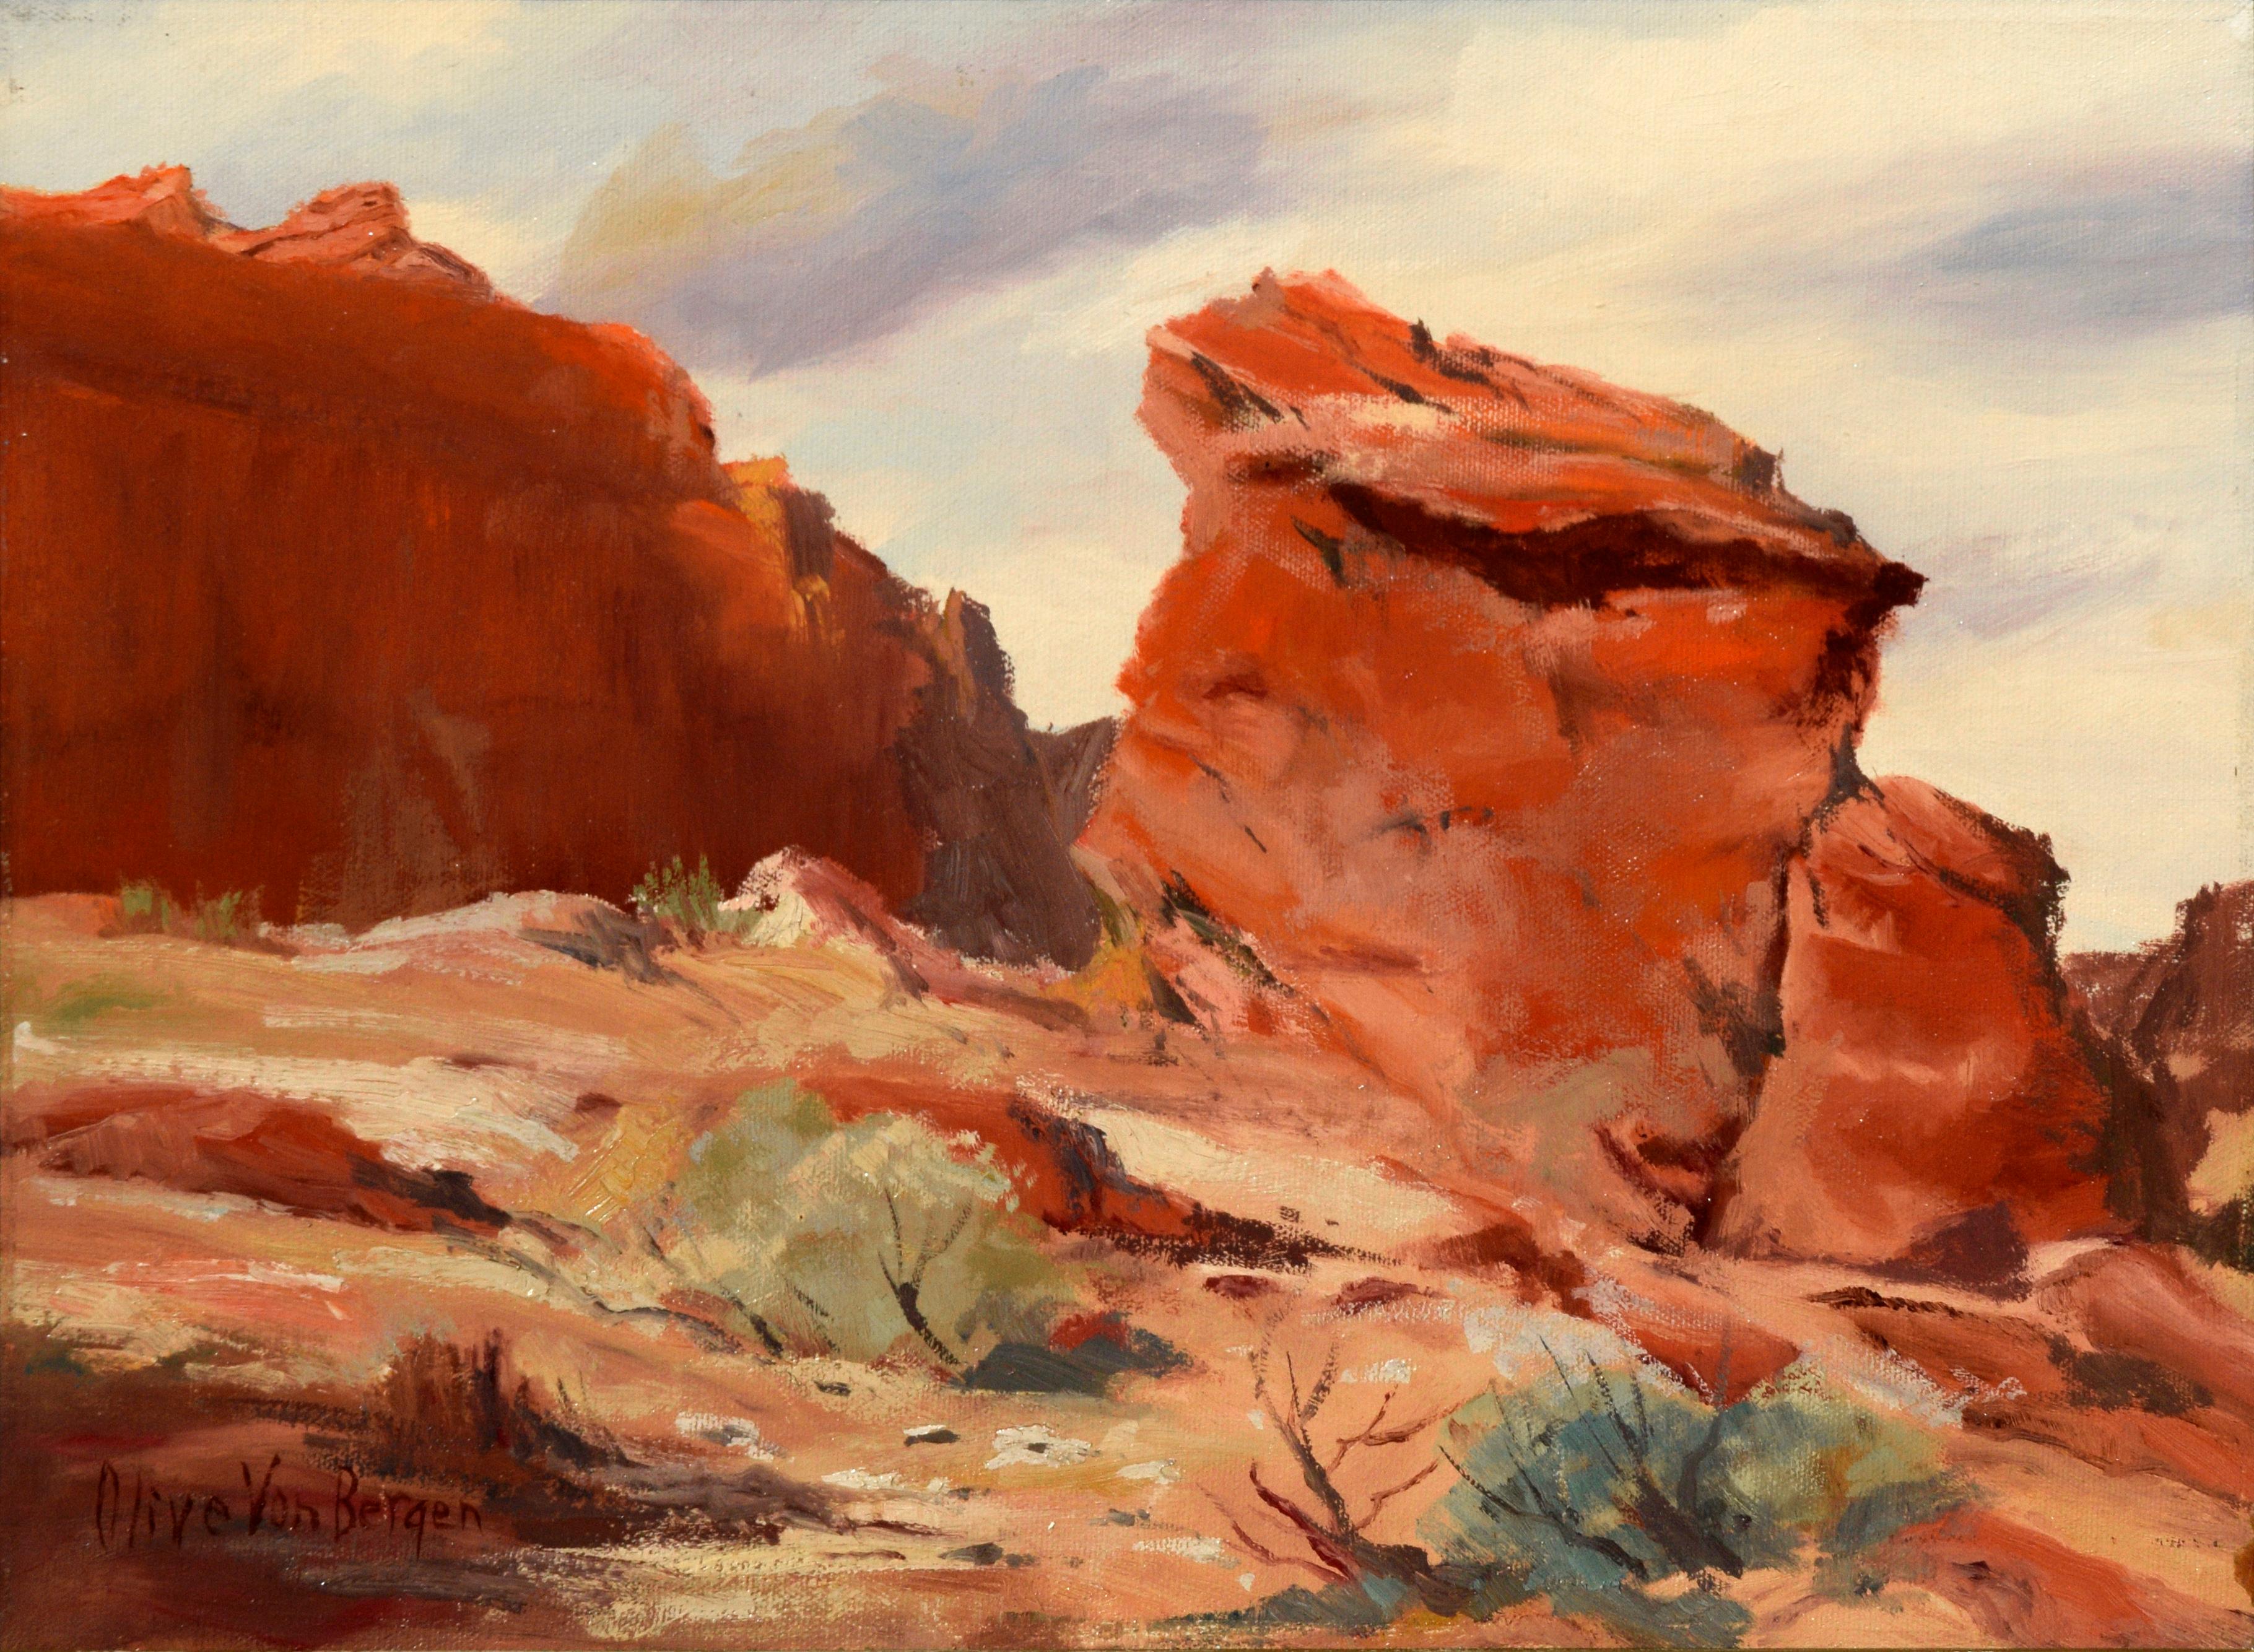 Paysage de roches rouges du désert des années 1940  - Painting de Olive Von Bergen